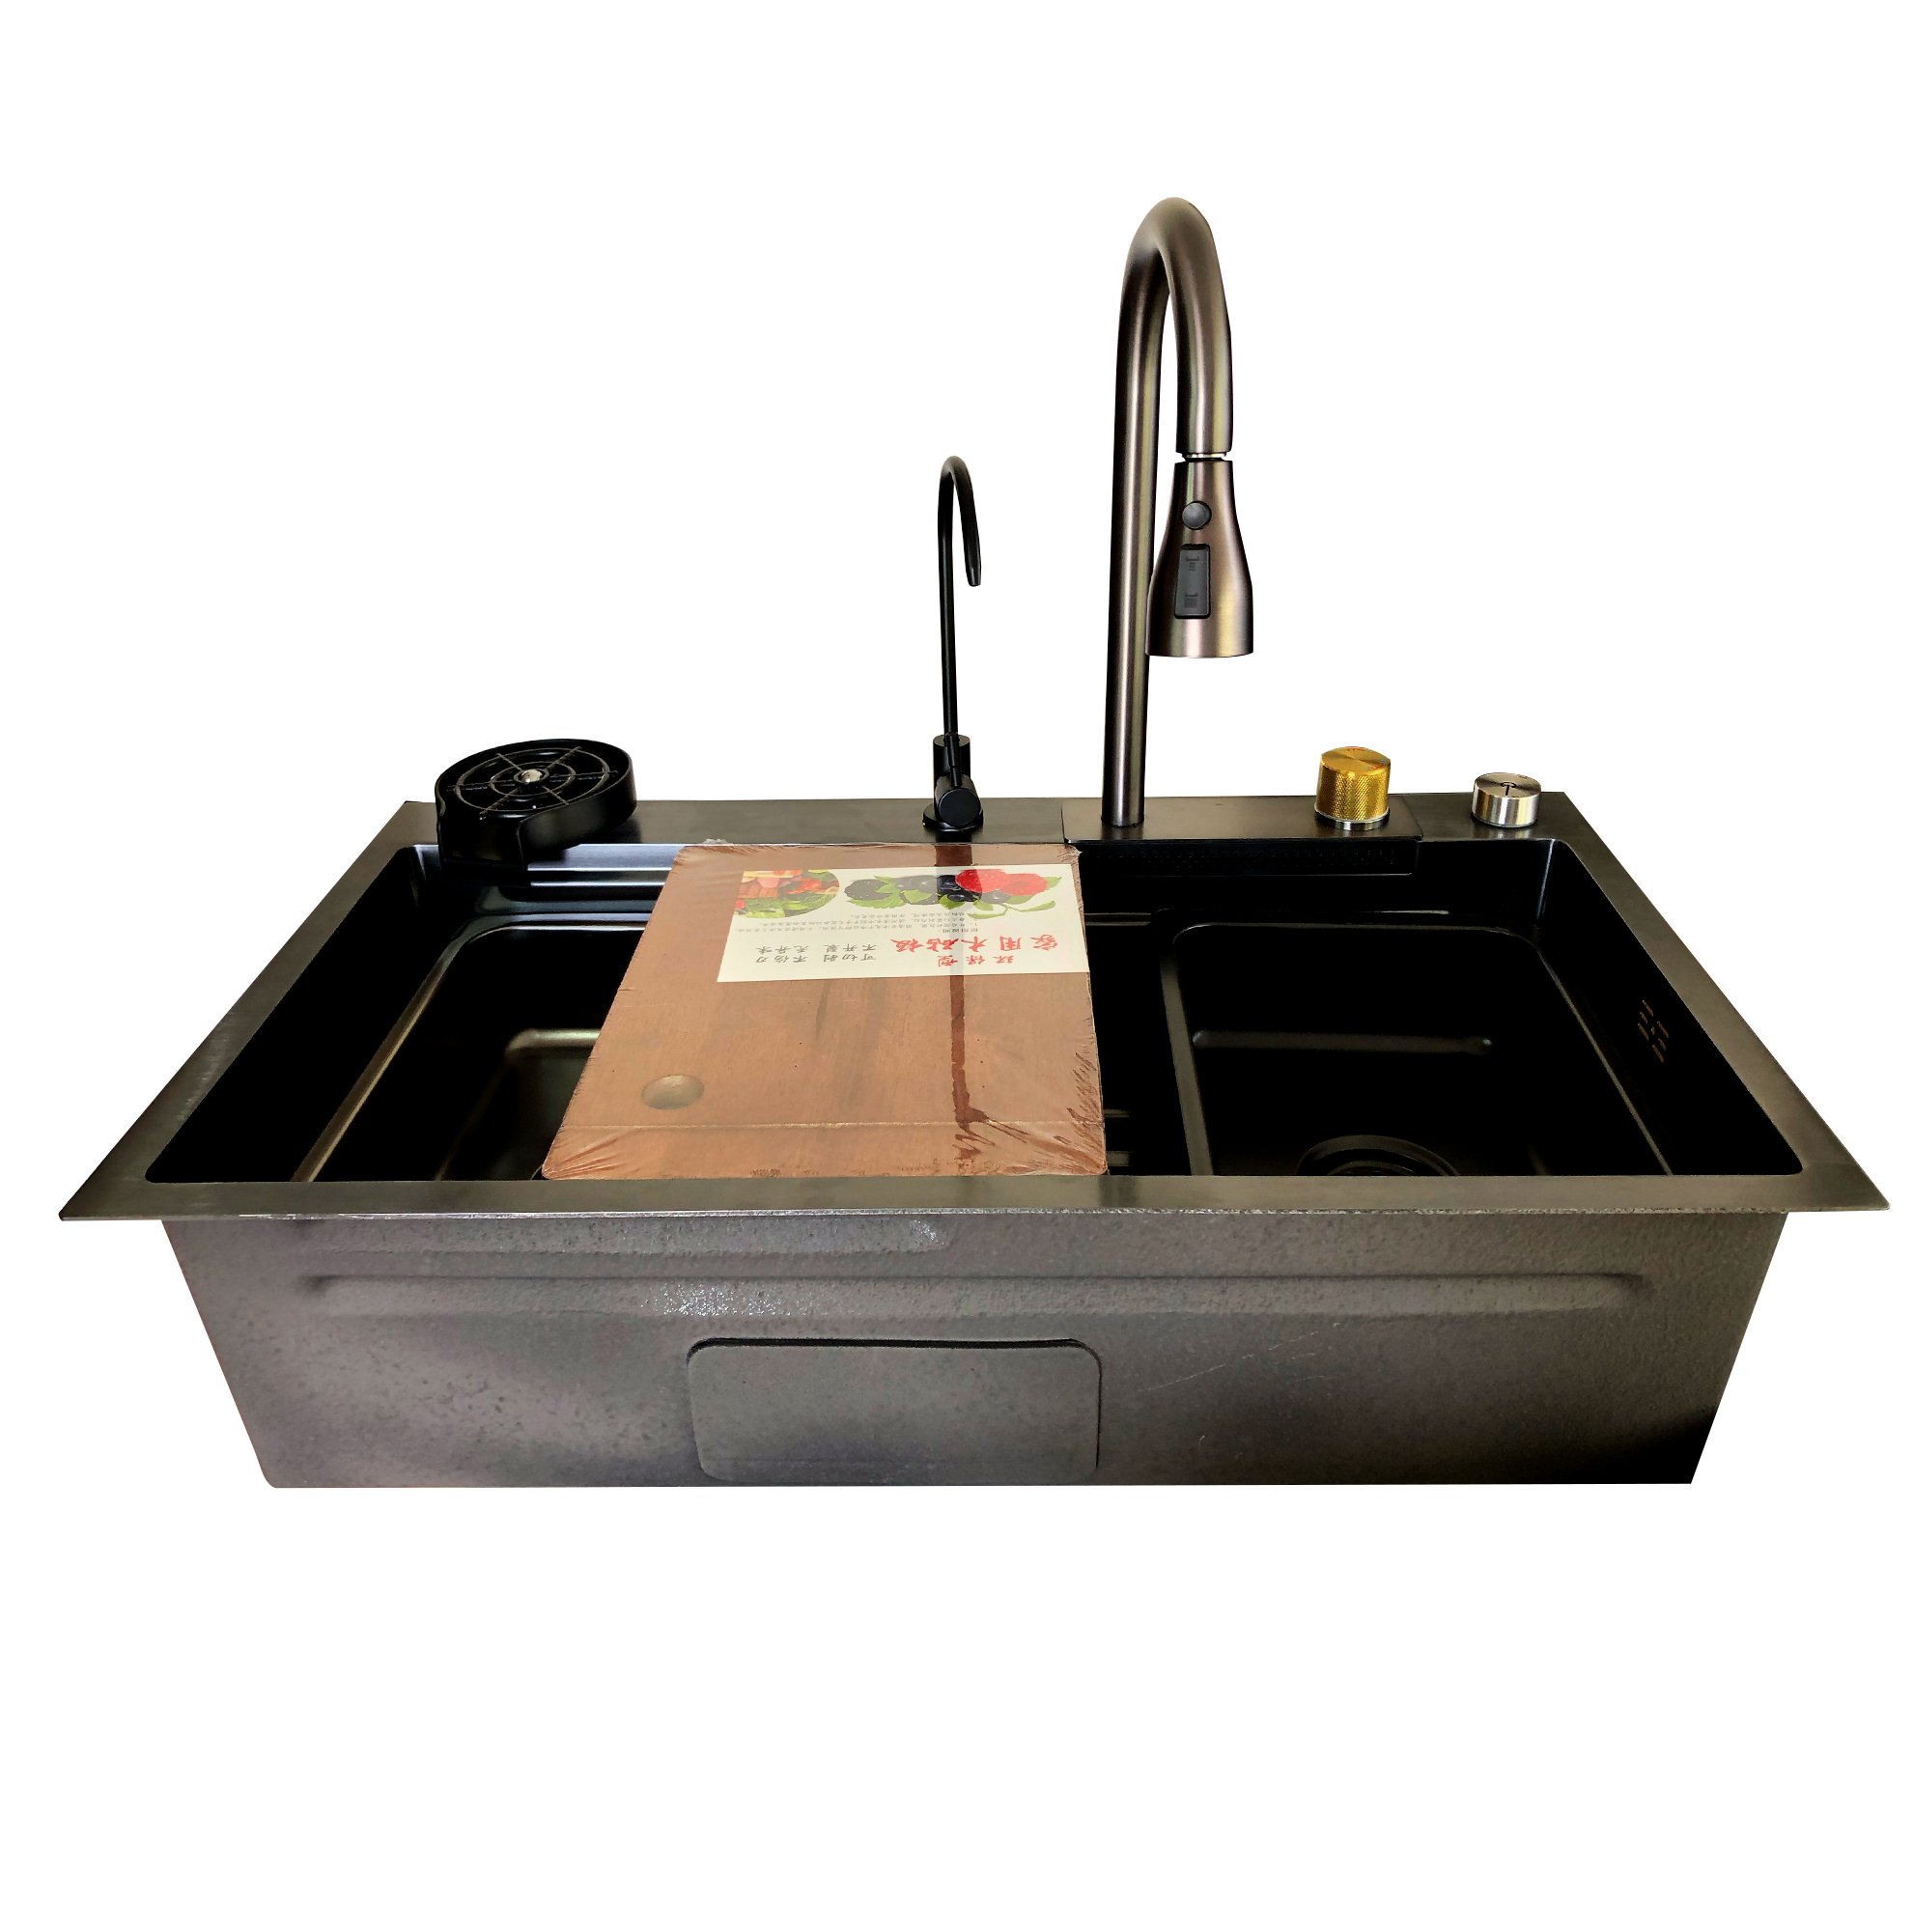 Dosificador de agua para fregador – AG BOX